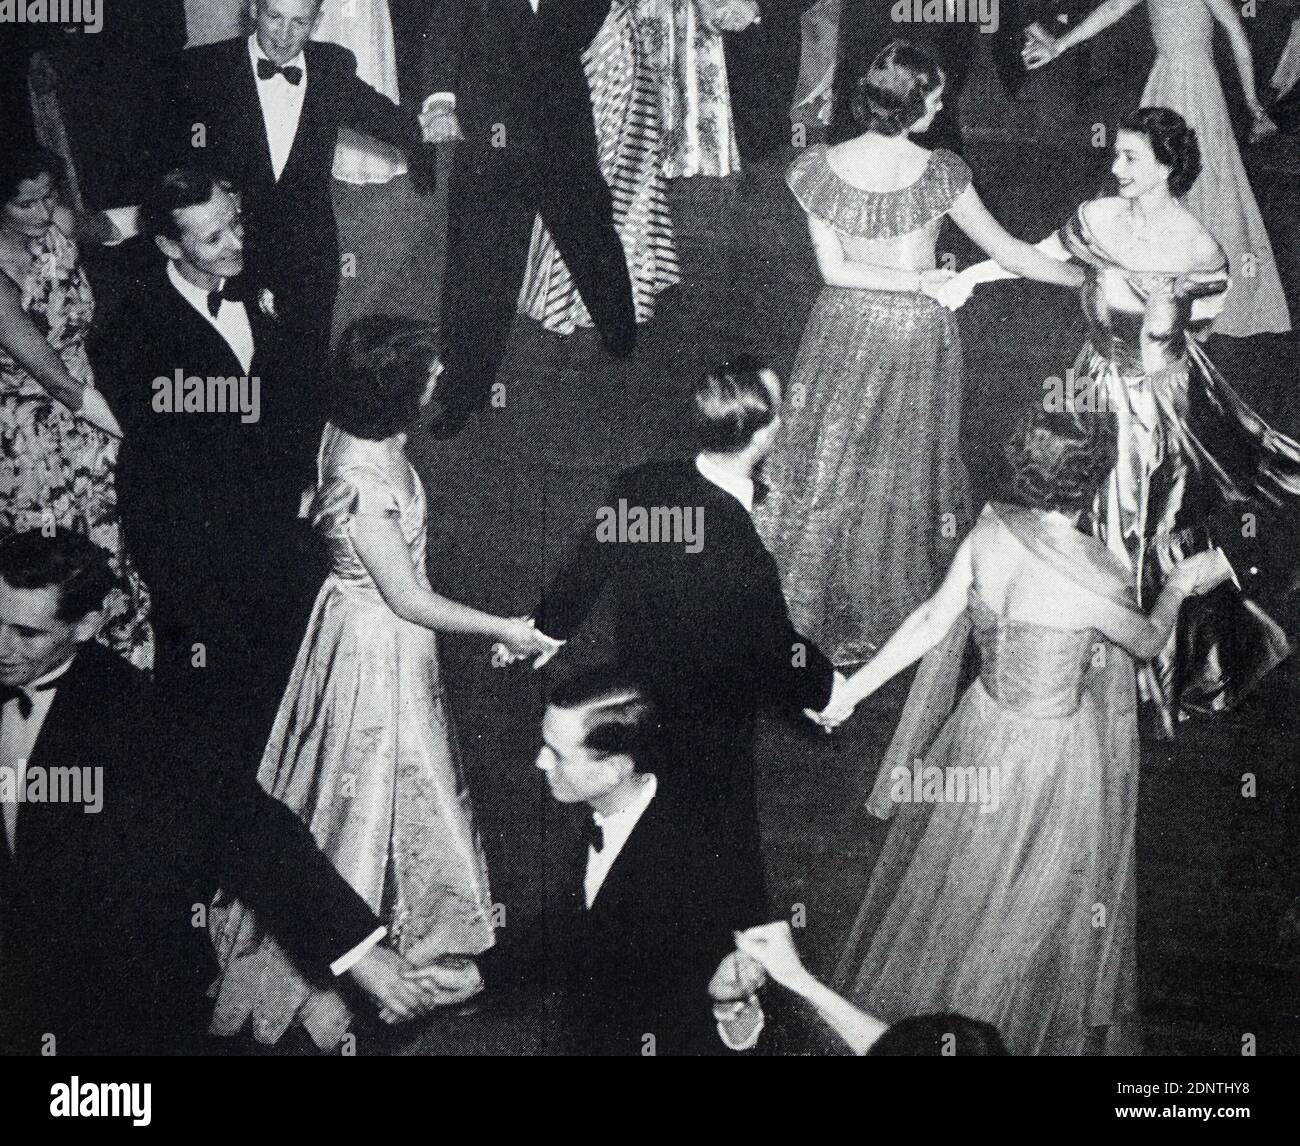 Queen Elizabeth II dancing with Prince Philip Stock Photo - Alamy